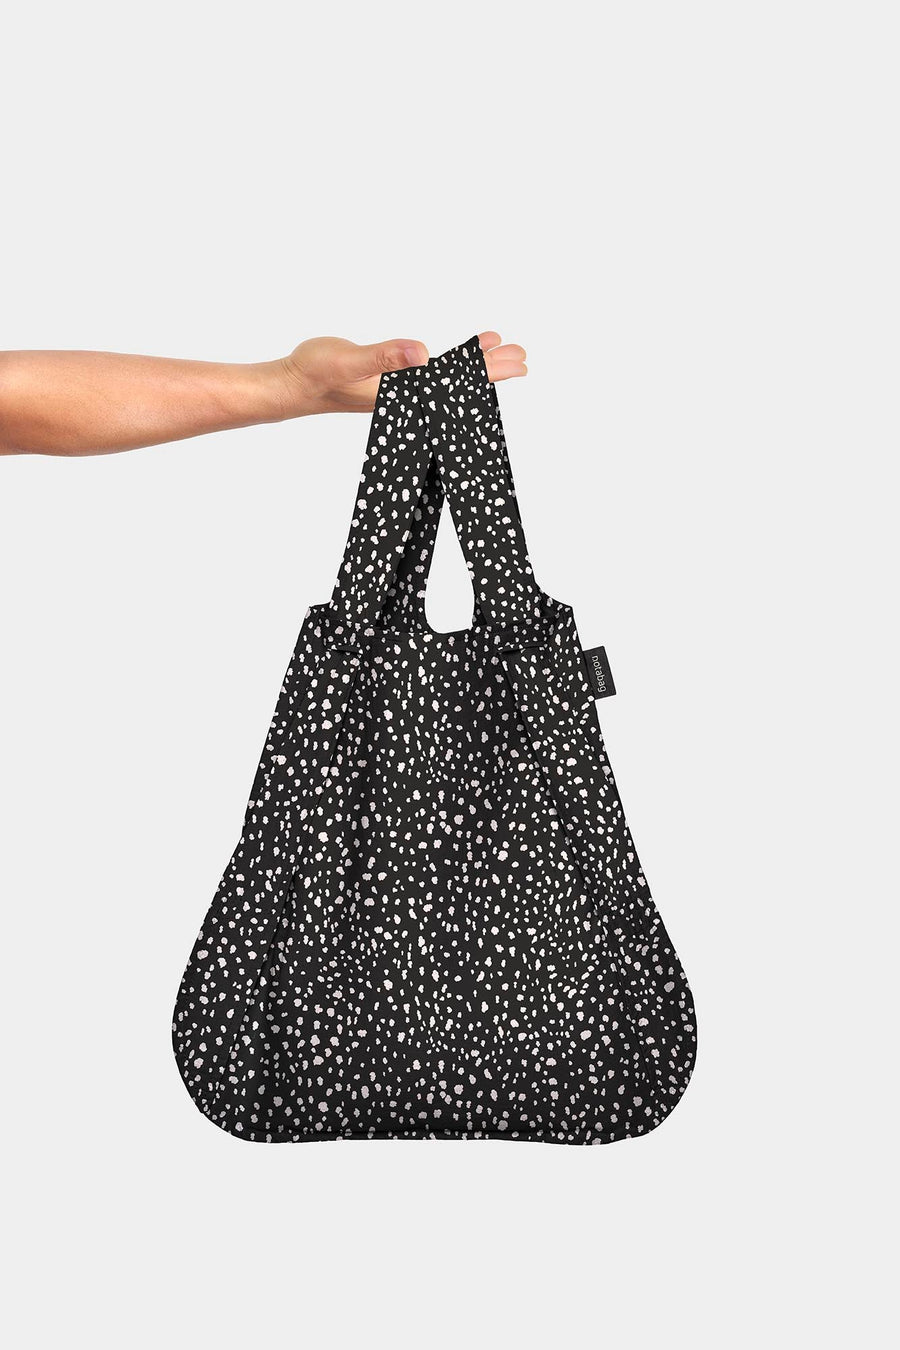 Black Sprinkle convertible tote/ backpack